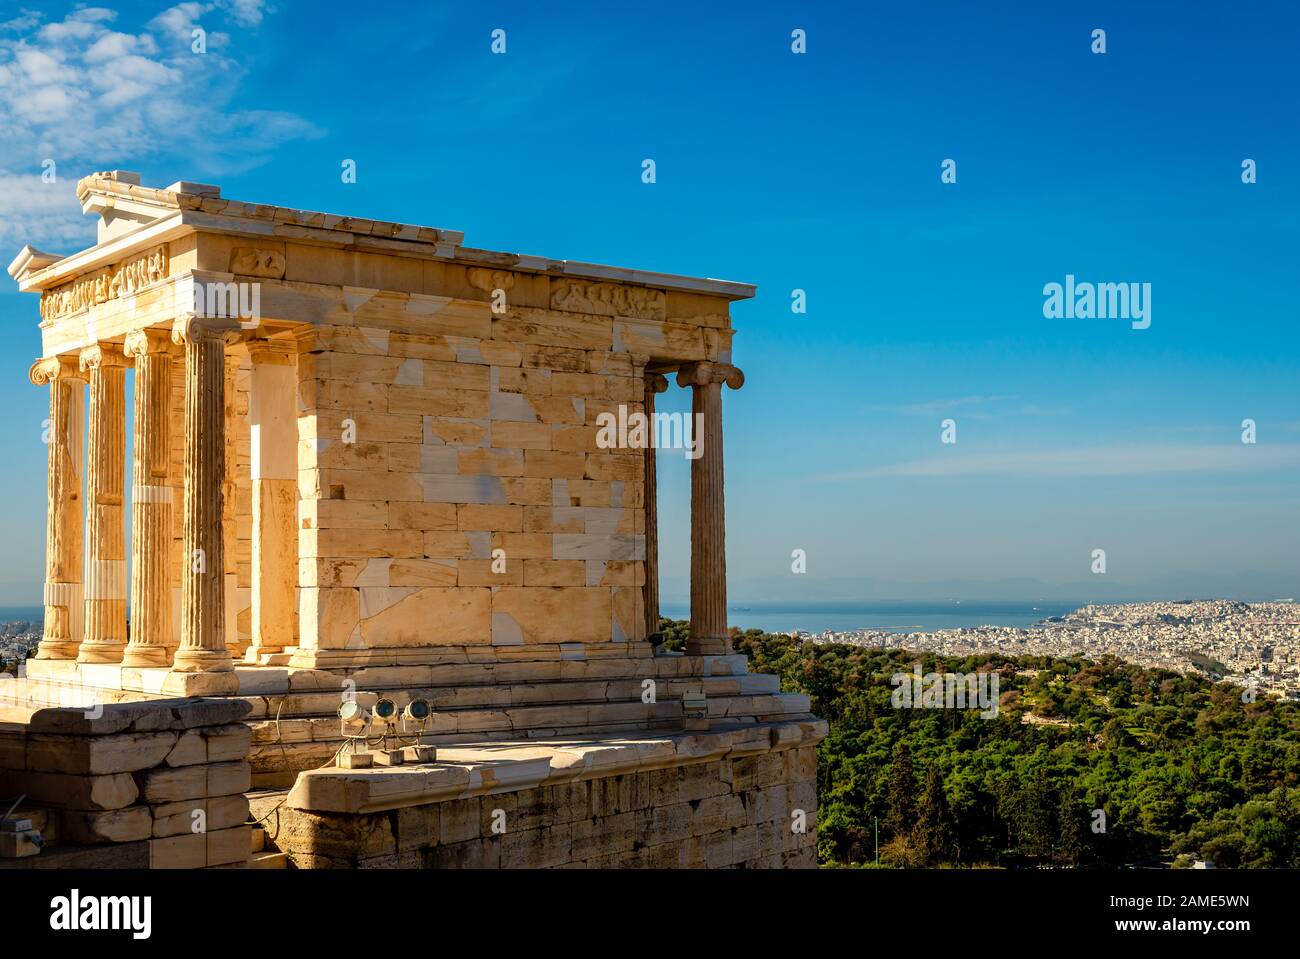 Der Tempel der Athena Nike auf der Akropolis von Athen, Griechenland, benannt  nach der griechischen Göttin Athena. Philopappos Hill, Piräus und der  saronische Golf ar Stockfotografie - Alamy